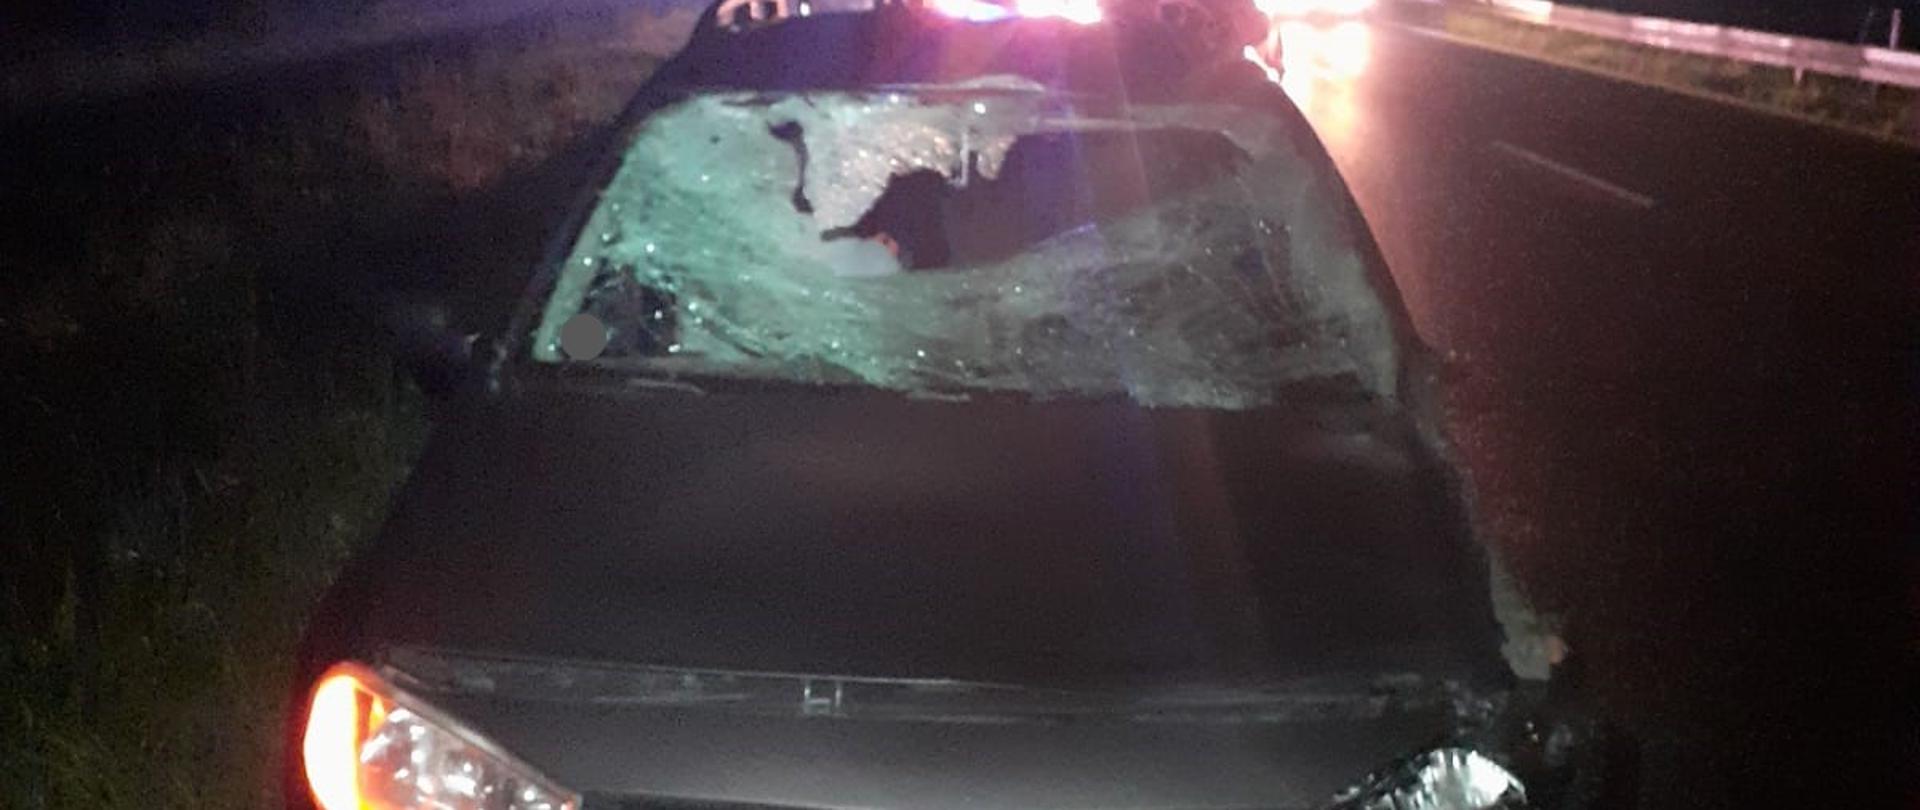 Zdjęcie wykonane w porze nocnej przedstawia stojący na poboczu drogi krajowej samochód osobowy z uszkodzoną przednią częścią, wybitą szybą po zderzeniu z sarną. W tle widoczne światła nadjeżdżających pojazdów.